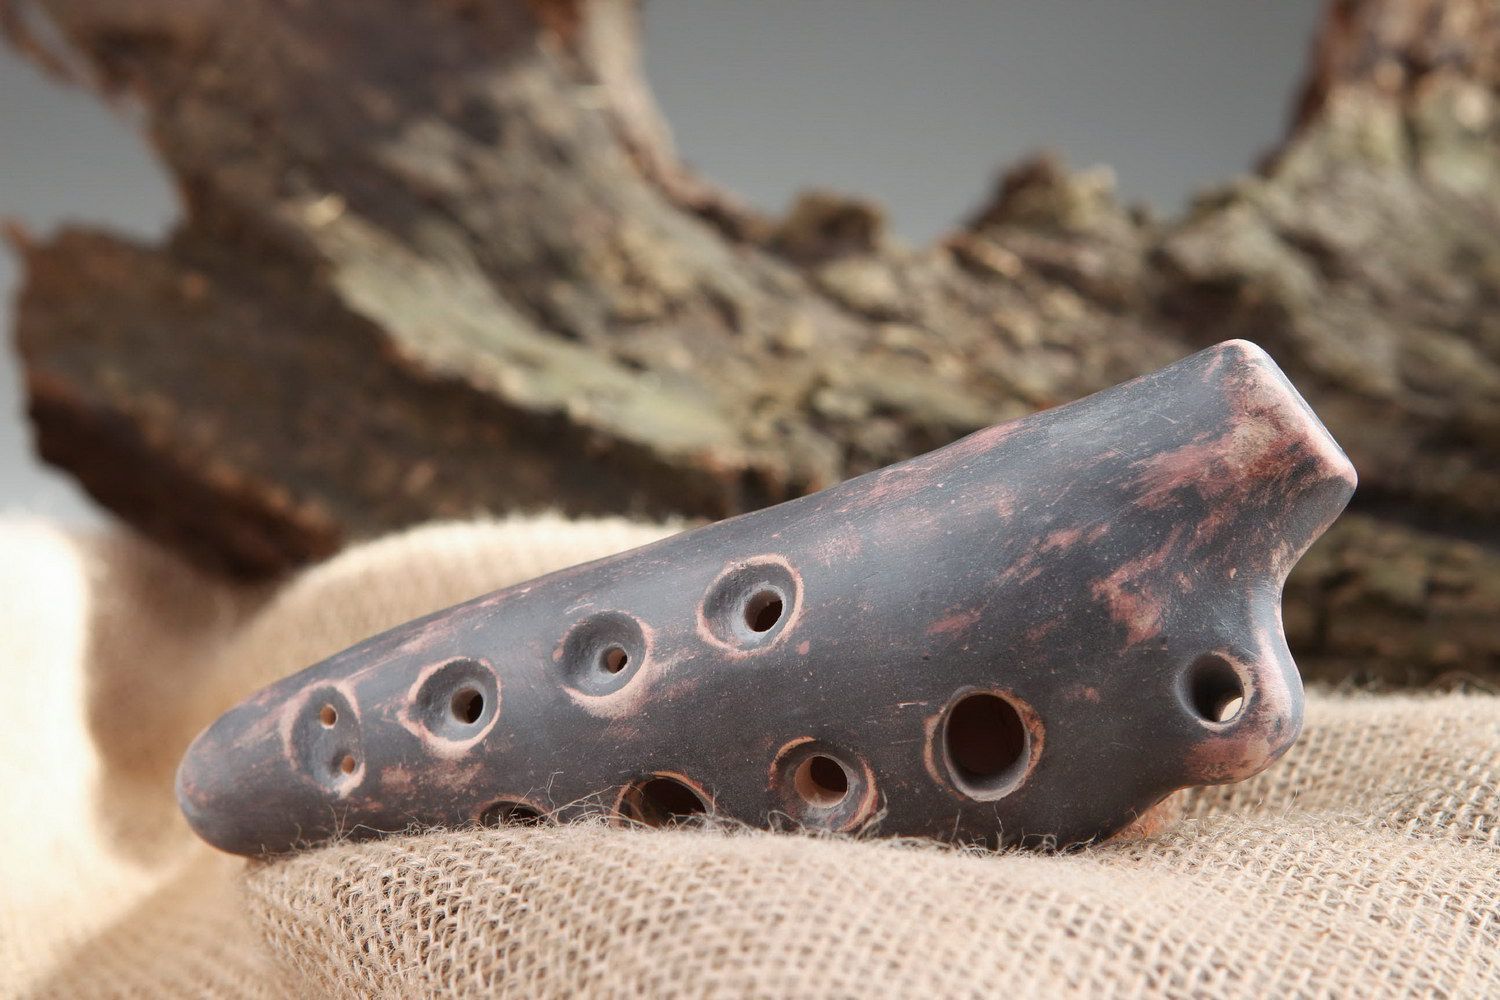 Ocarina, globular flute made of clay photo 1